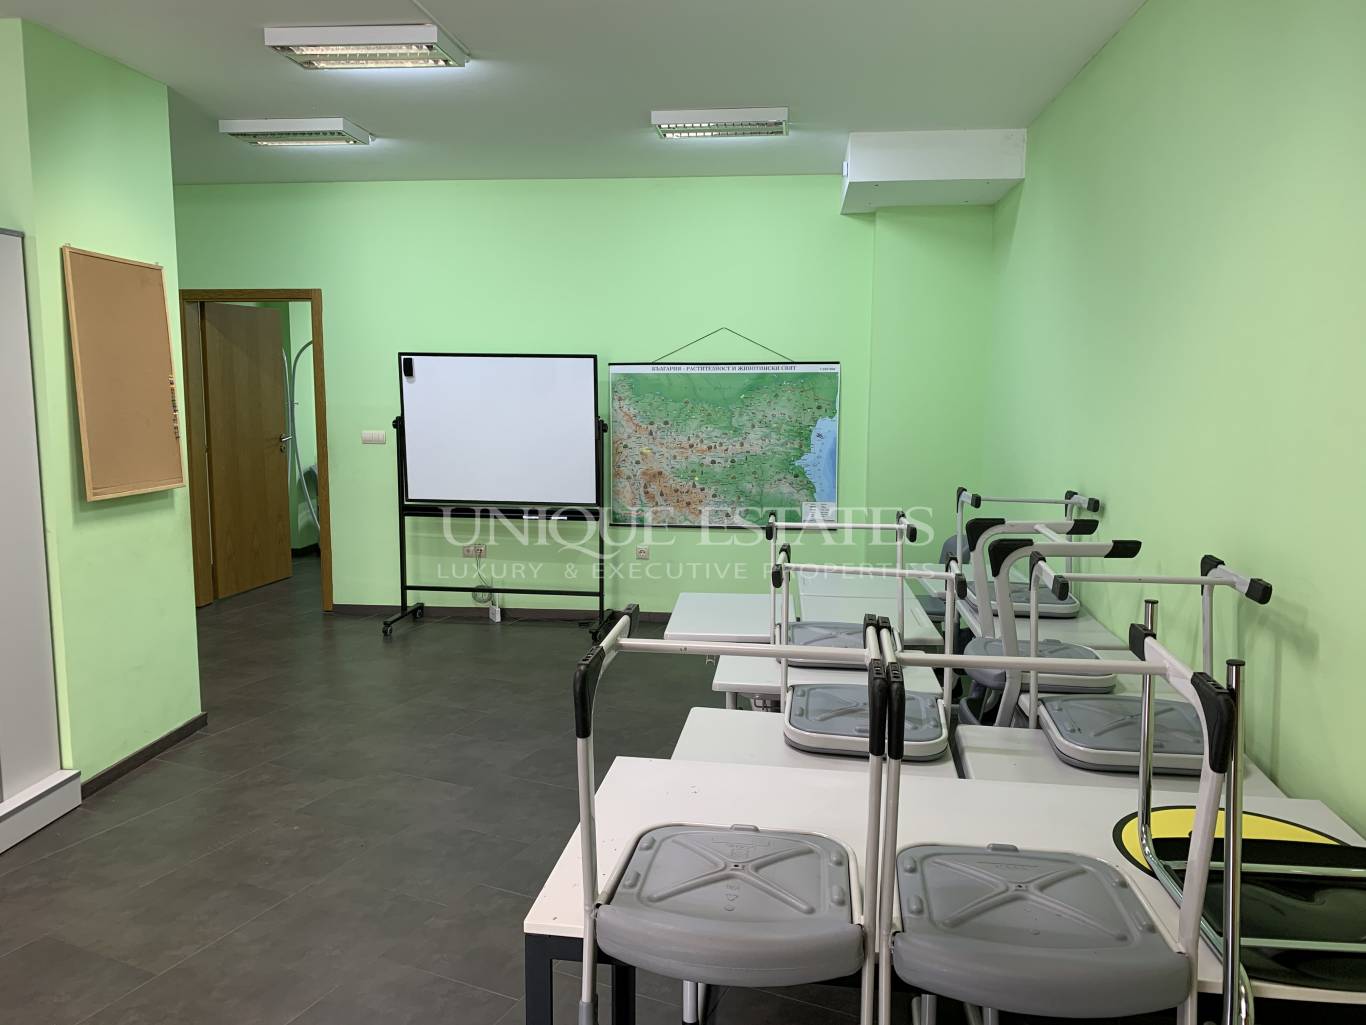 Офис под наем в София, Борово - код на имота: N13355 - image 2